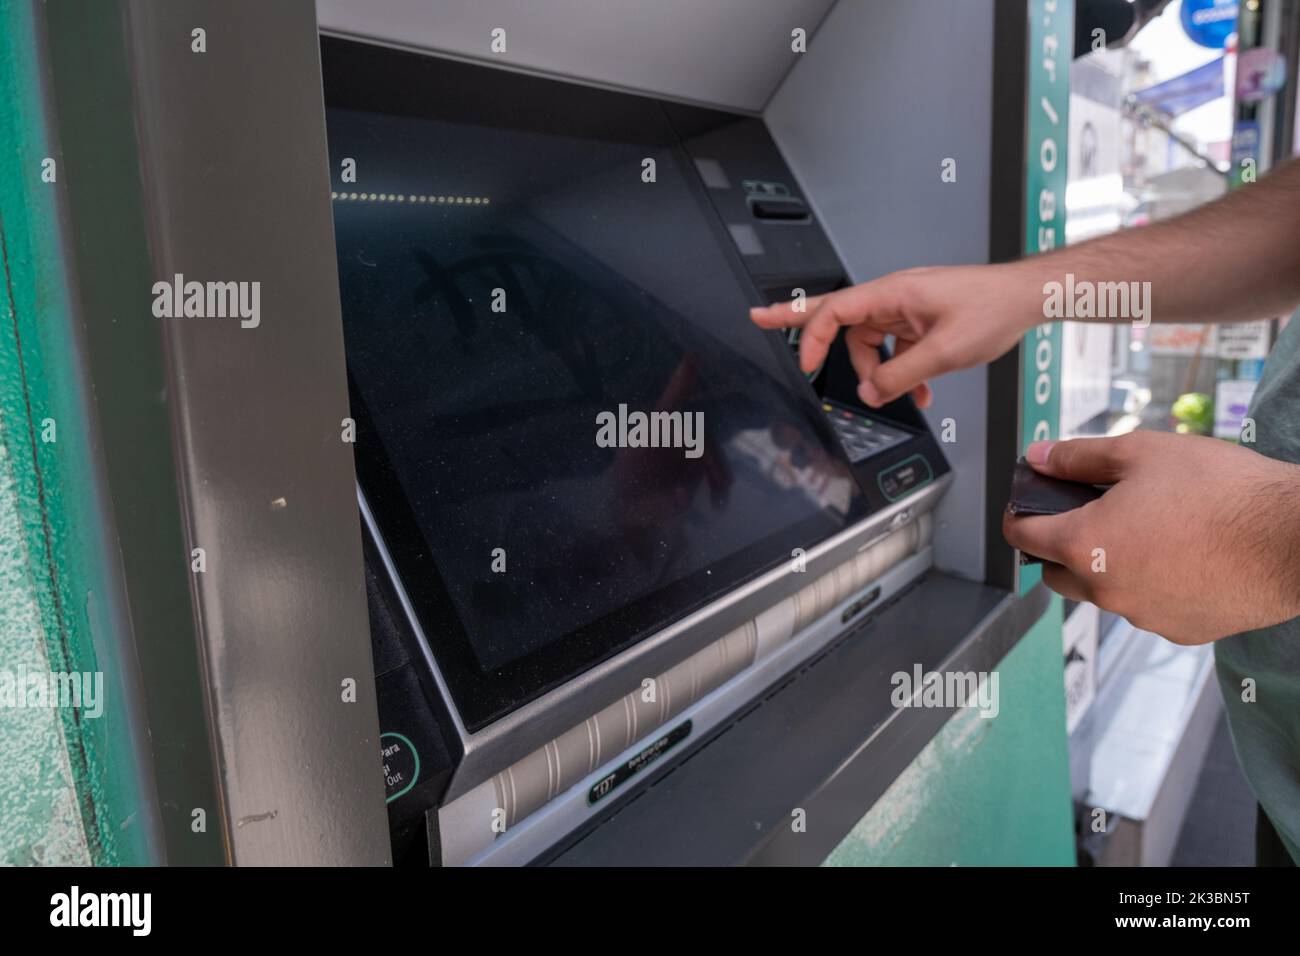 Mani uomo con bancomat, bancomat automatico con mano di persona, business e concetto bancario, bancomat con schermo, cliente che fa prelievo di denaro Foto Stock